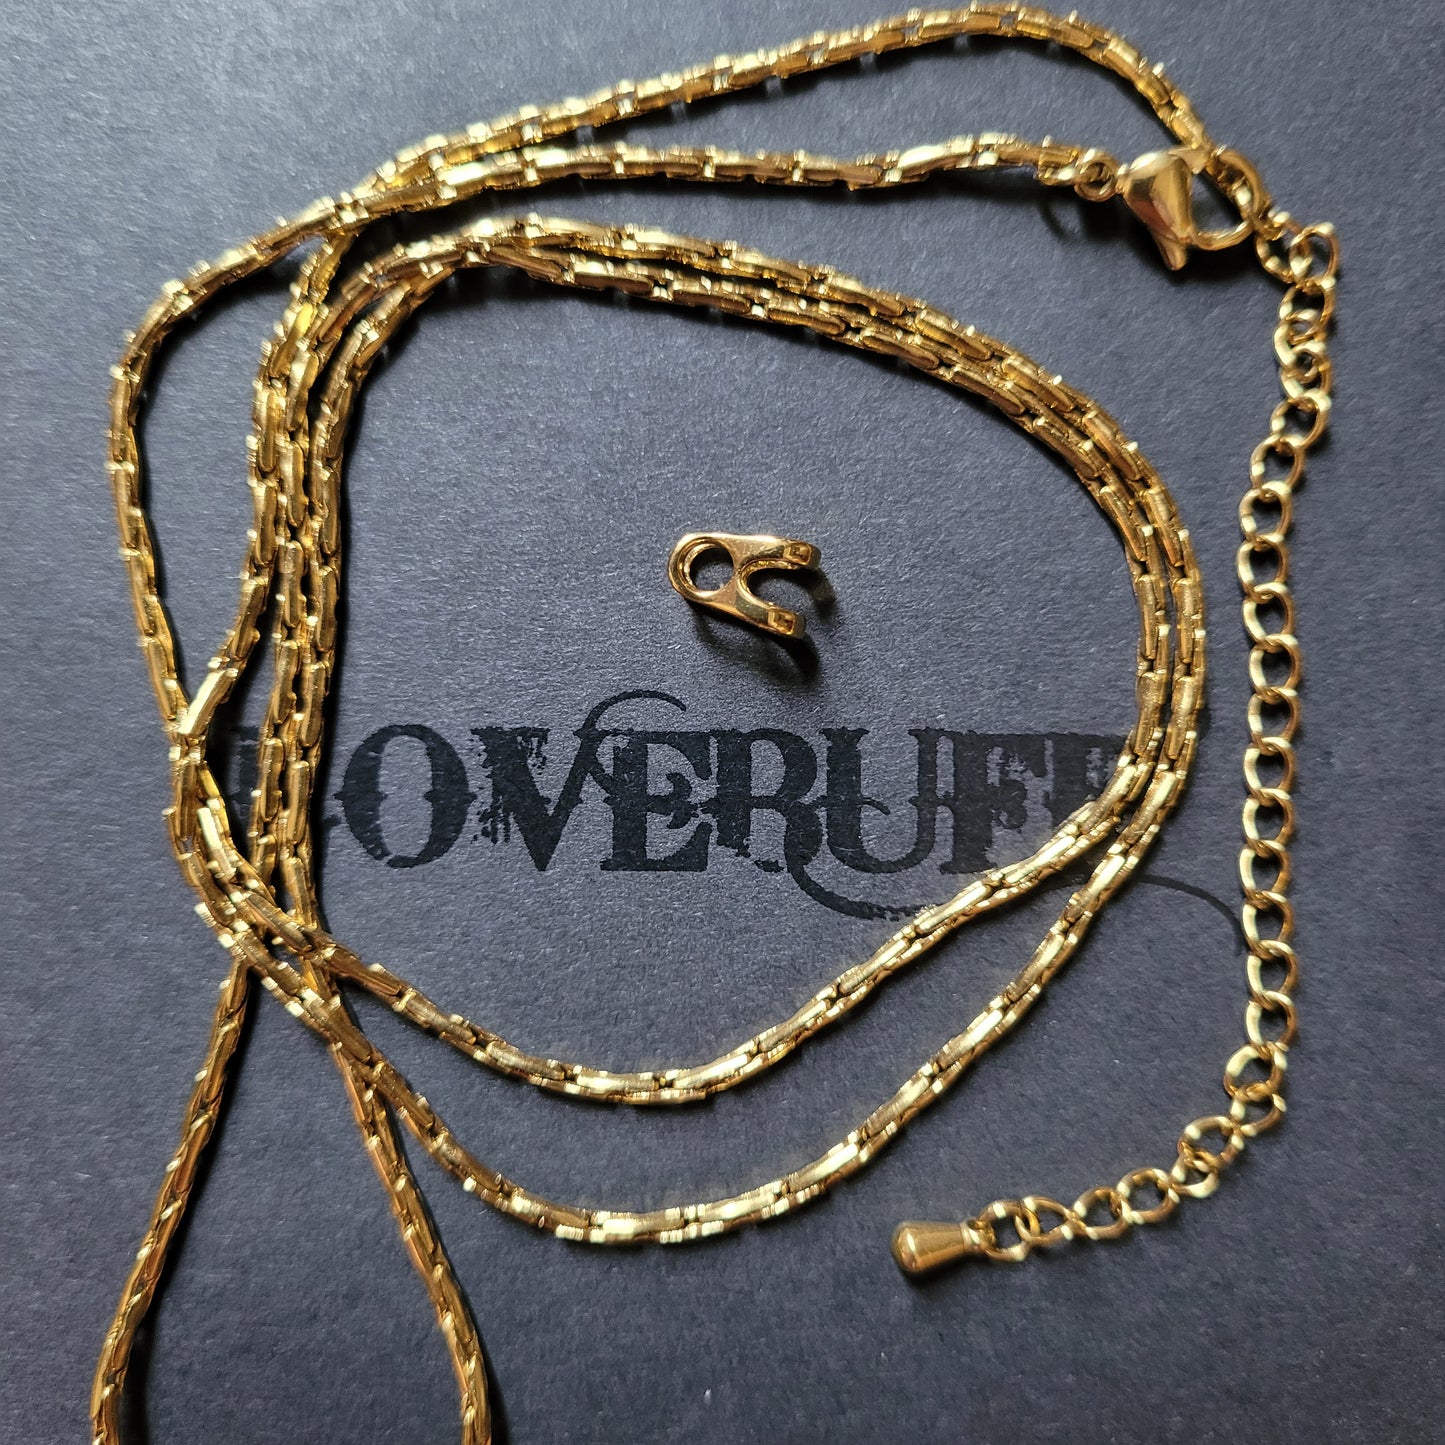 LOVEBUFF(TM) Acessórios para joias, corrente de colar e conector de fiança